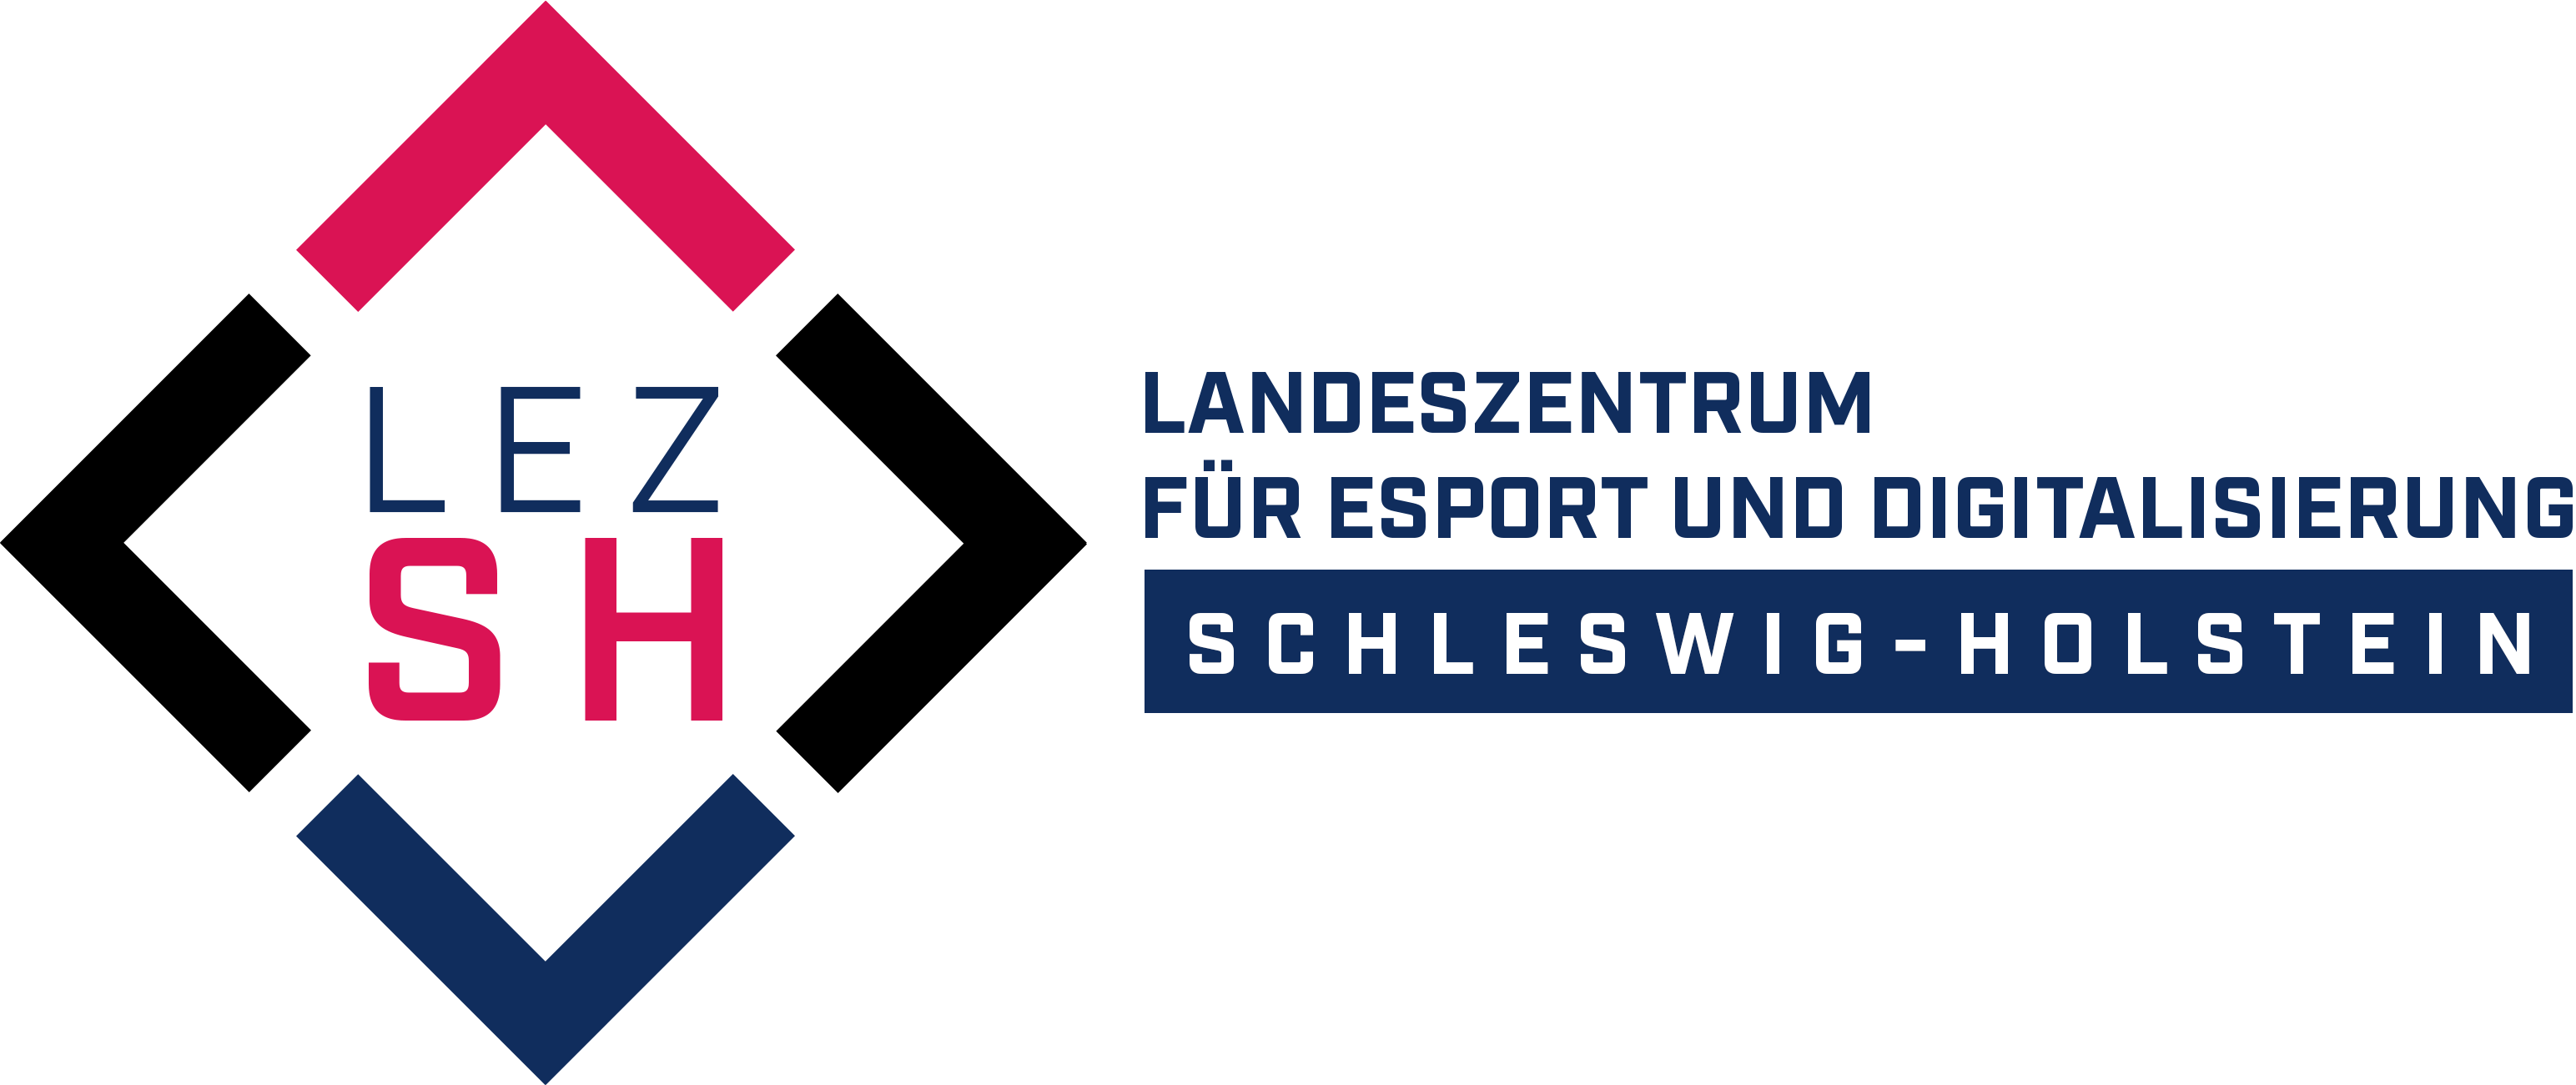 Landeszentrum für E-Sport und Digitalisierung Schleswig Holstein